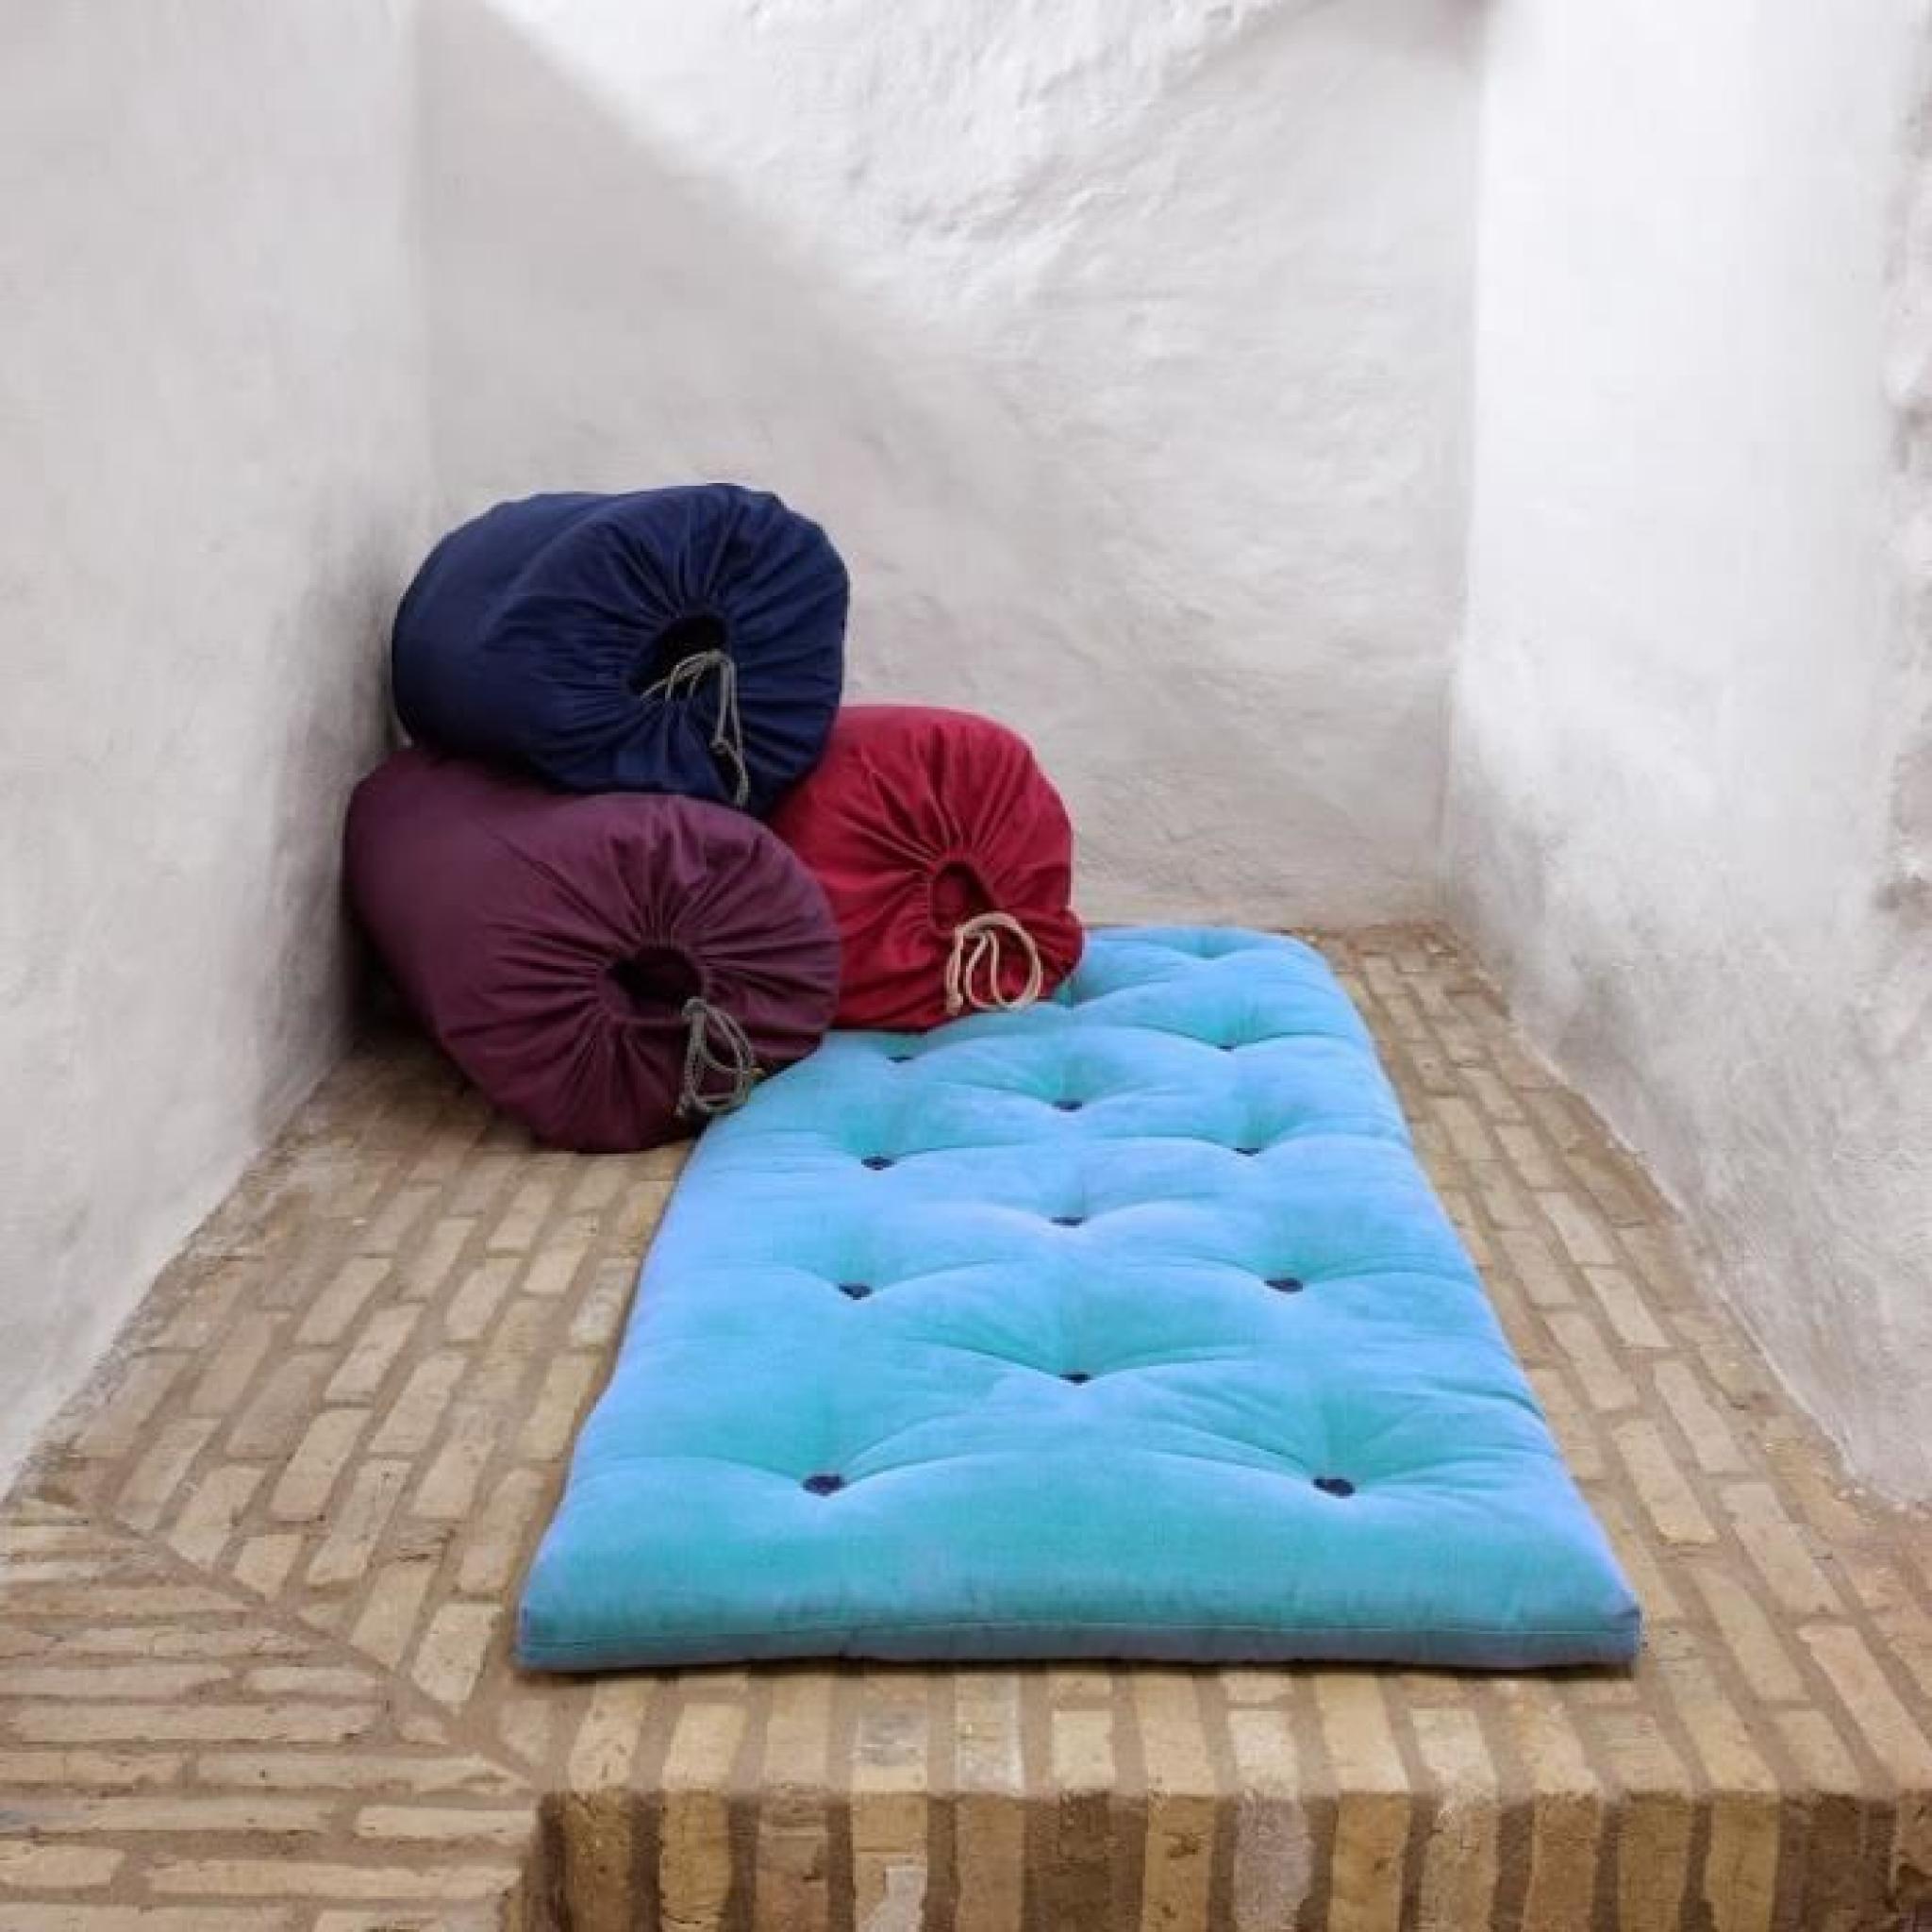 Matelas futon d'appoint bleu celeste BED IN A BAG couchage 70*190*5cm